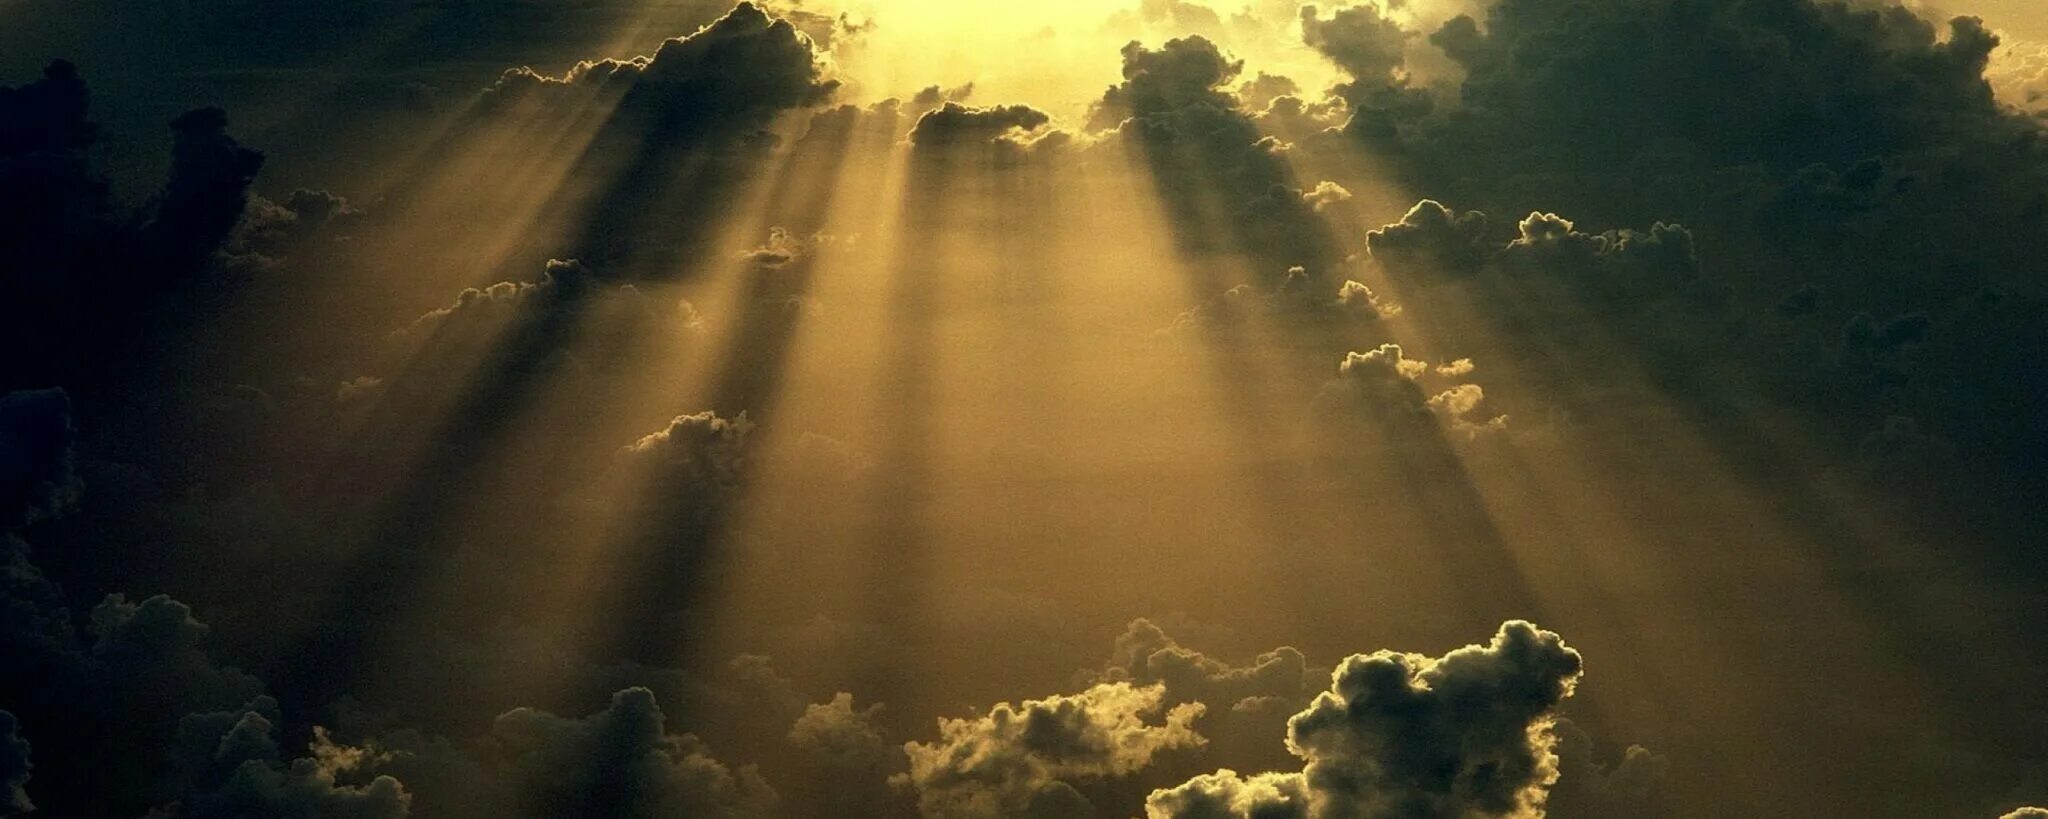 Свет с небес 1 том. Лучи солнца сквозь облака. Облака с лучами солнца. Солнце через облака. Луч света сквозь тучи.